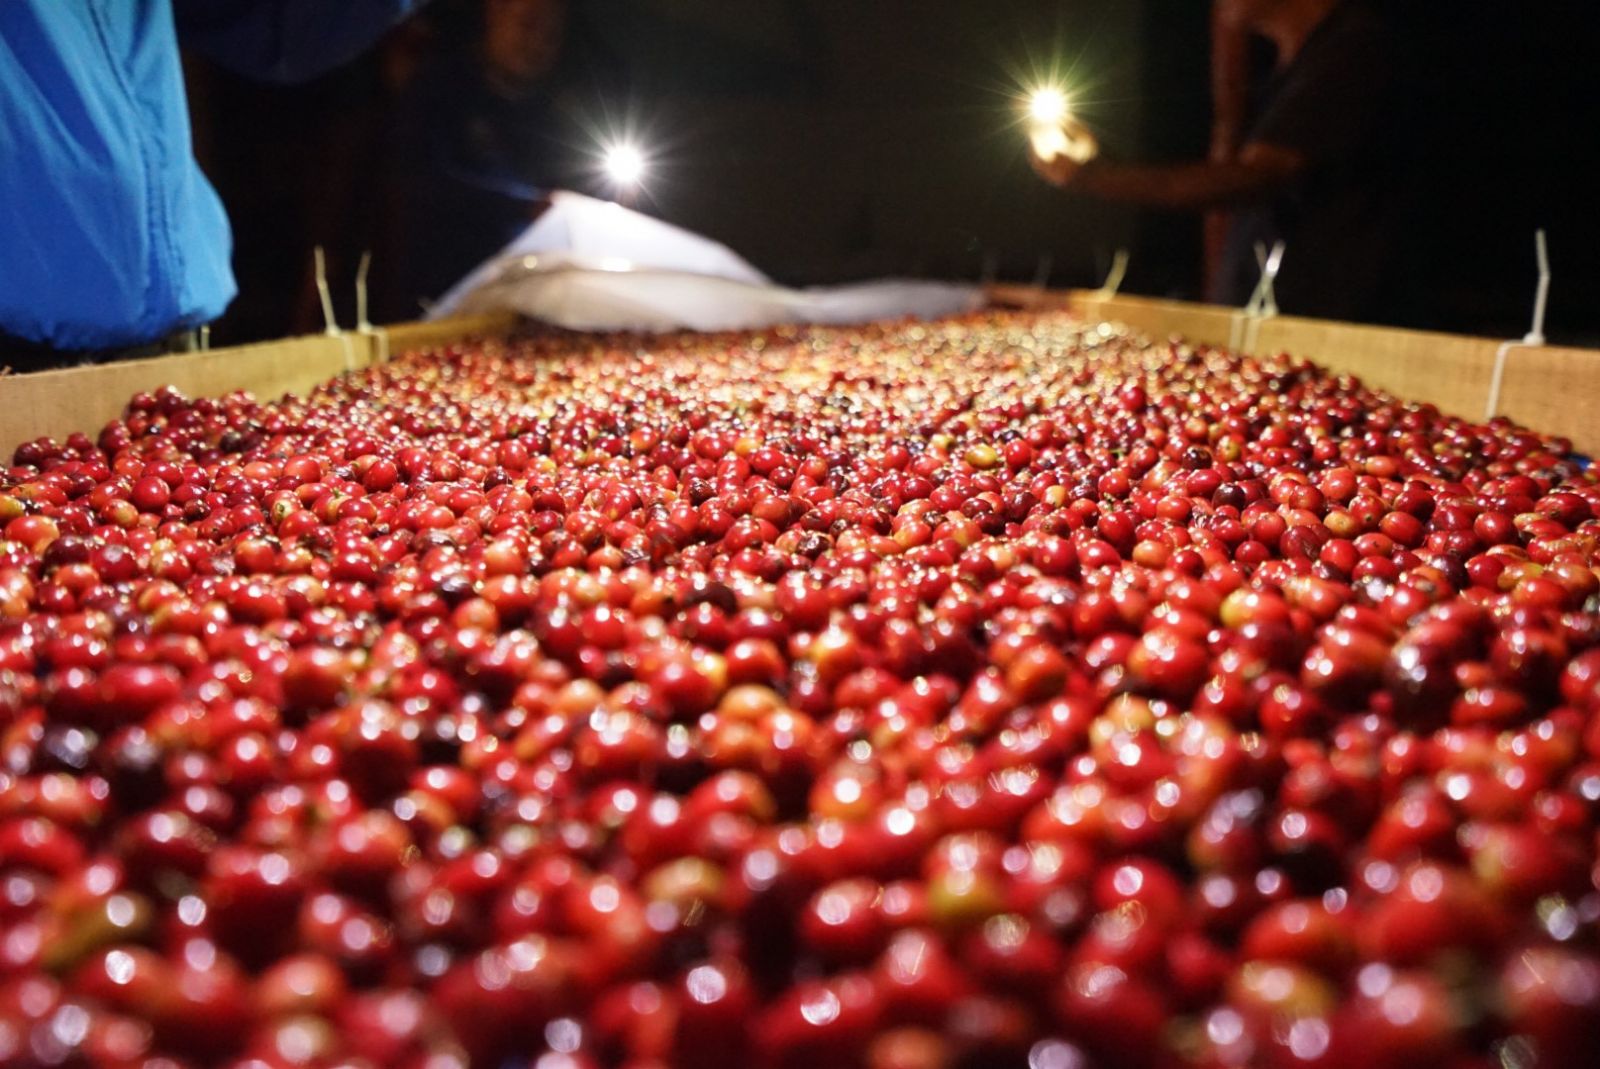 透過更精準細緻的處理法，我們確實提高了寮國咖啡的風味，做出了寮國有史以來第一支精品咖啡豆。